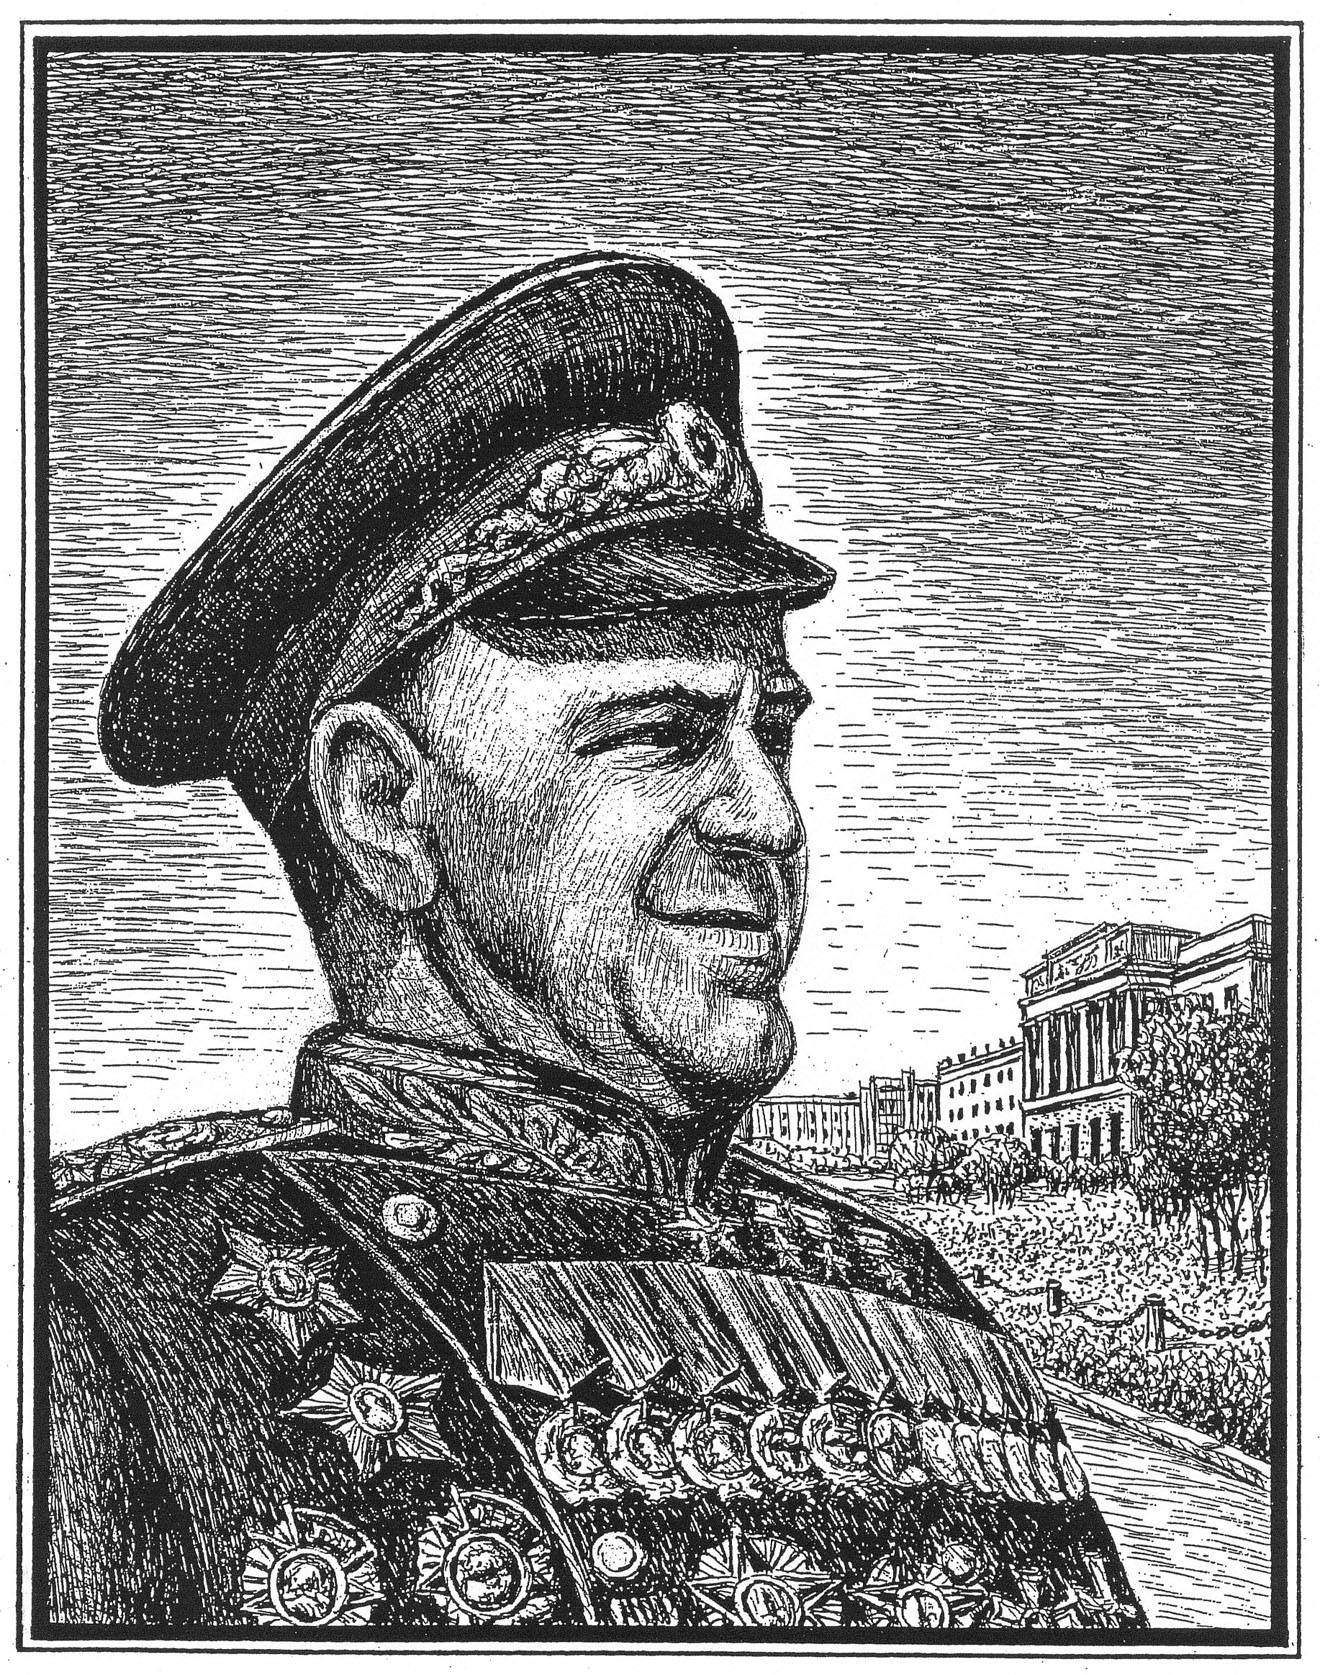 Жуков Георгий Константинович — маршал, четырежды Герой Советского Союза